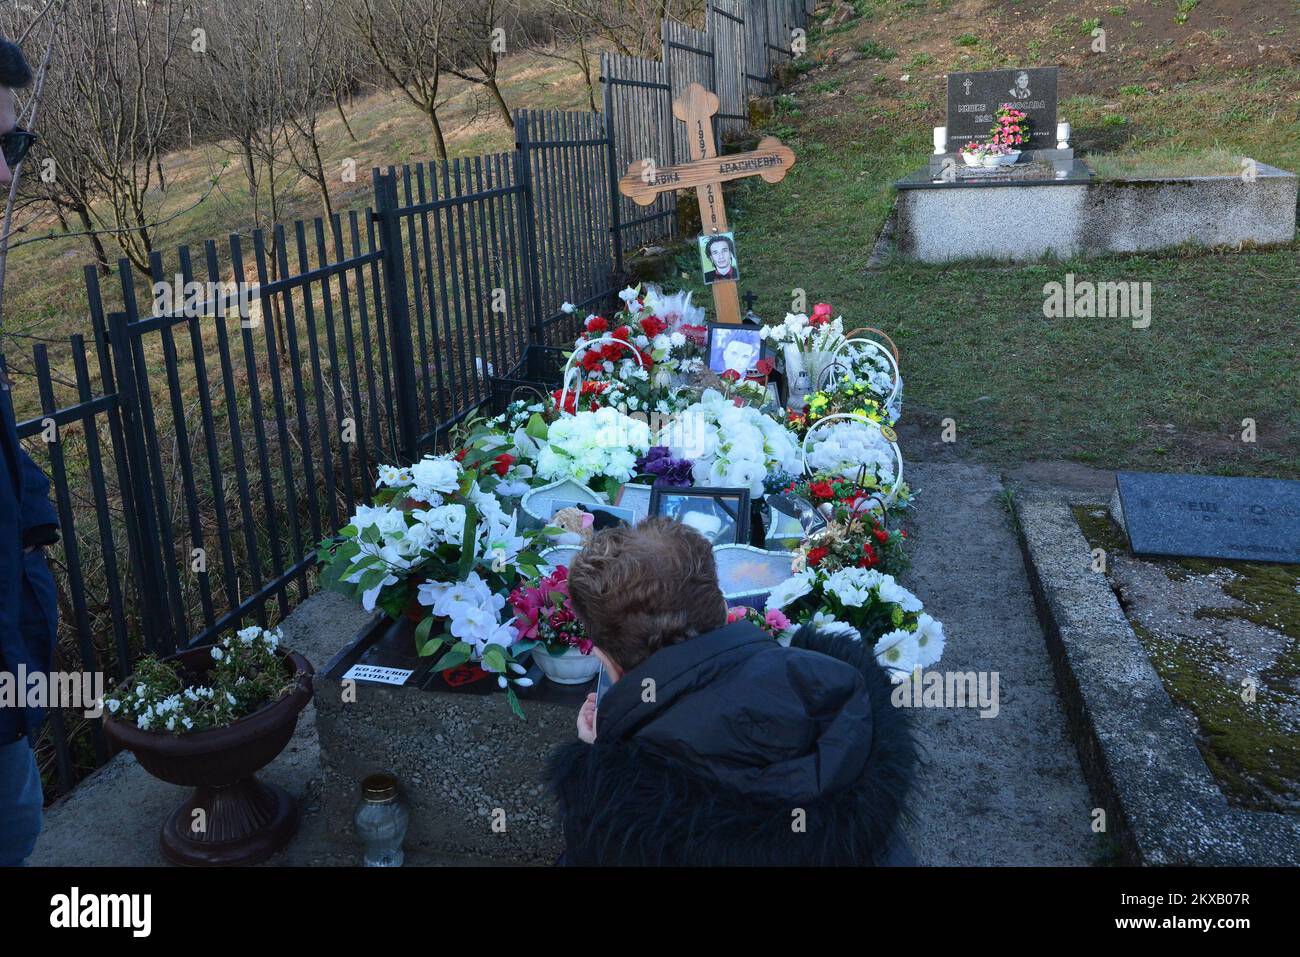 12.03.2019., Banja Luka, Bosnia-Erzegovina - i resti di uno studente bosniaco di 21 anni David Dragicevic, la cui morte irrisolta ha ispirato mesi di proteste contro una presunta copertura della polizia, sono stati esumati per poter essere sepolto in Austria.decine di bosniaci riuniti in un cimitero per dire l'ultimo saluto a David.David Dragicevic è morto Lo scorso marzo a Banja Luka in quella che la polizia ha descritto per la prima volta come suicidio, ma la famiglia ha insistito che fosse assassinato.la madre di David Dragicevic vive in Austria e vi sarà sepolto Foto: Ivica Galovic/PIXSELL Foto Stock